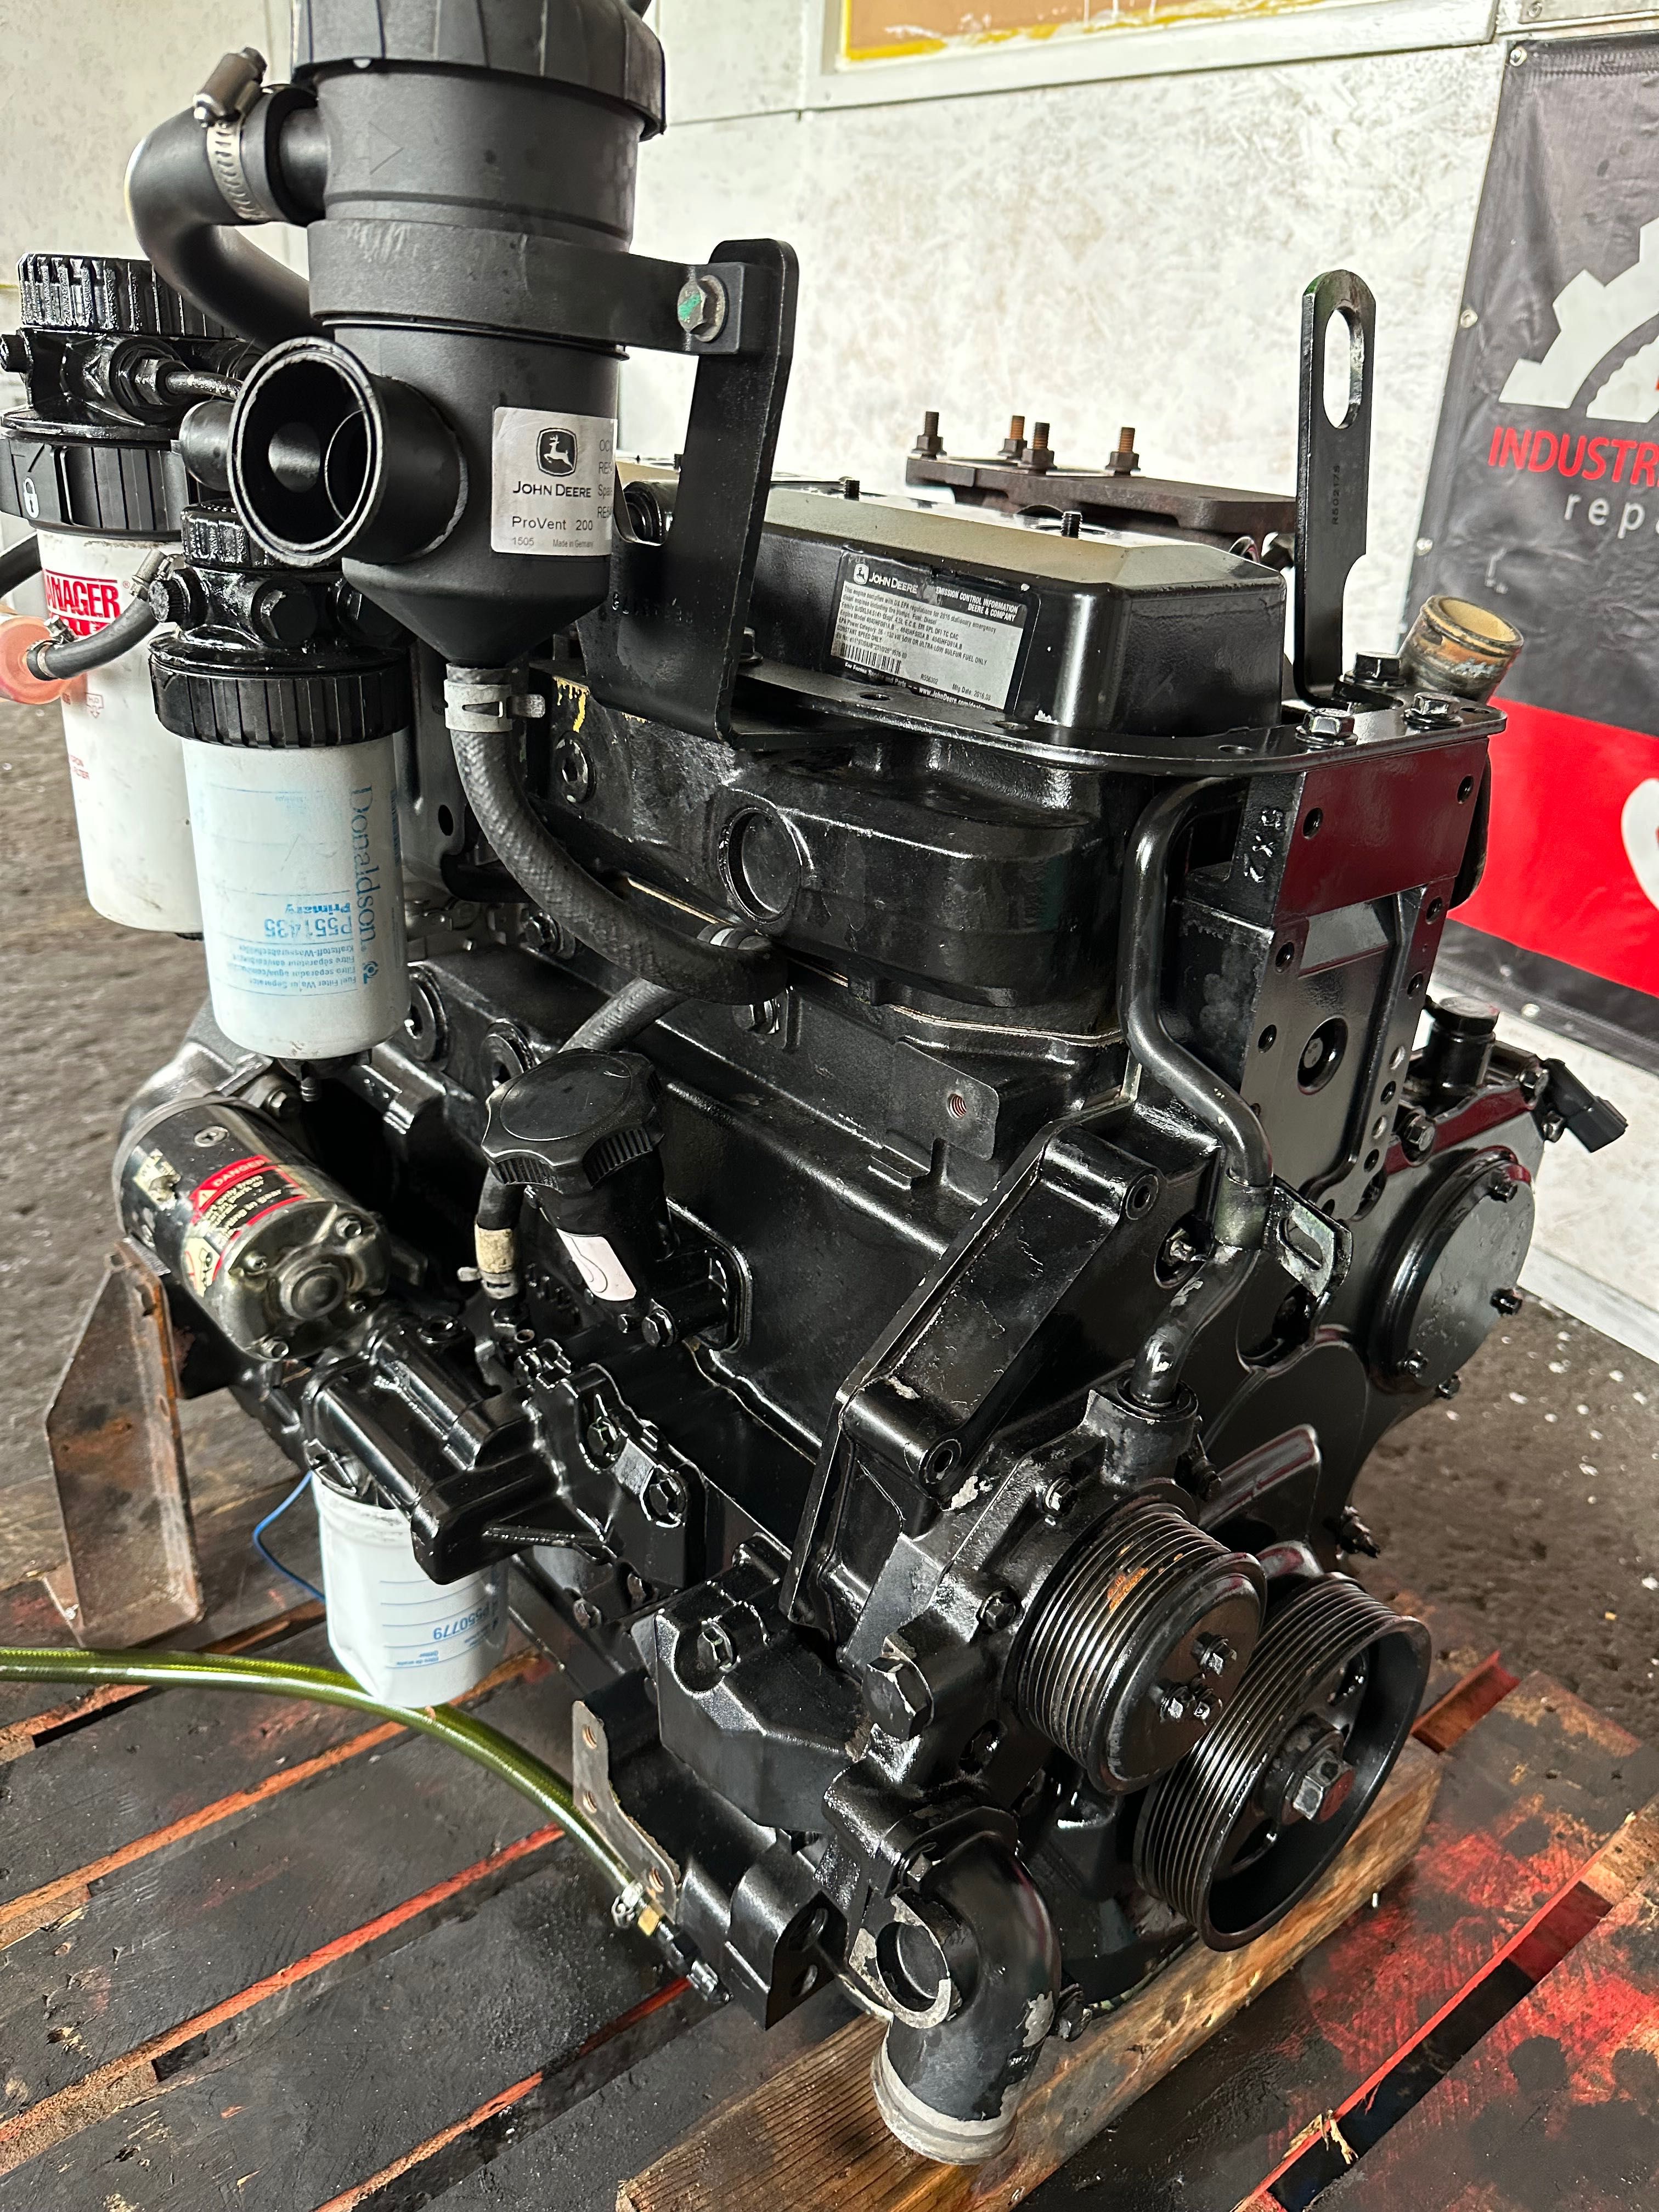 Vând motor J.Deere 4045